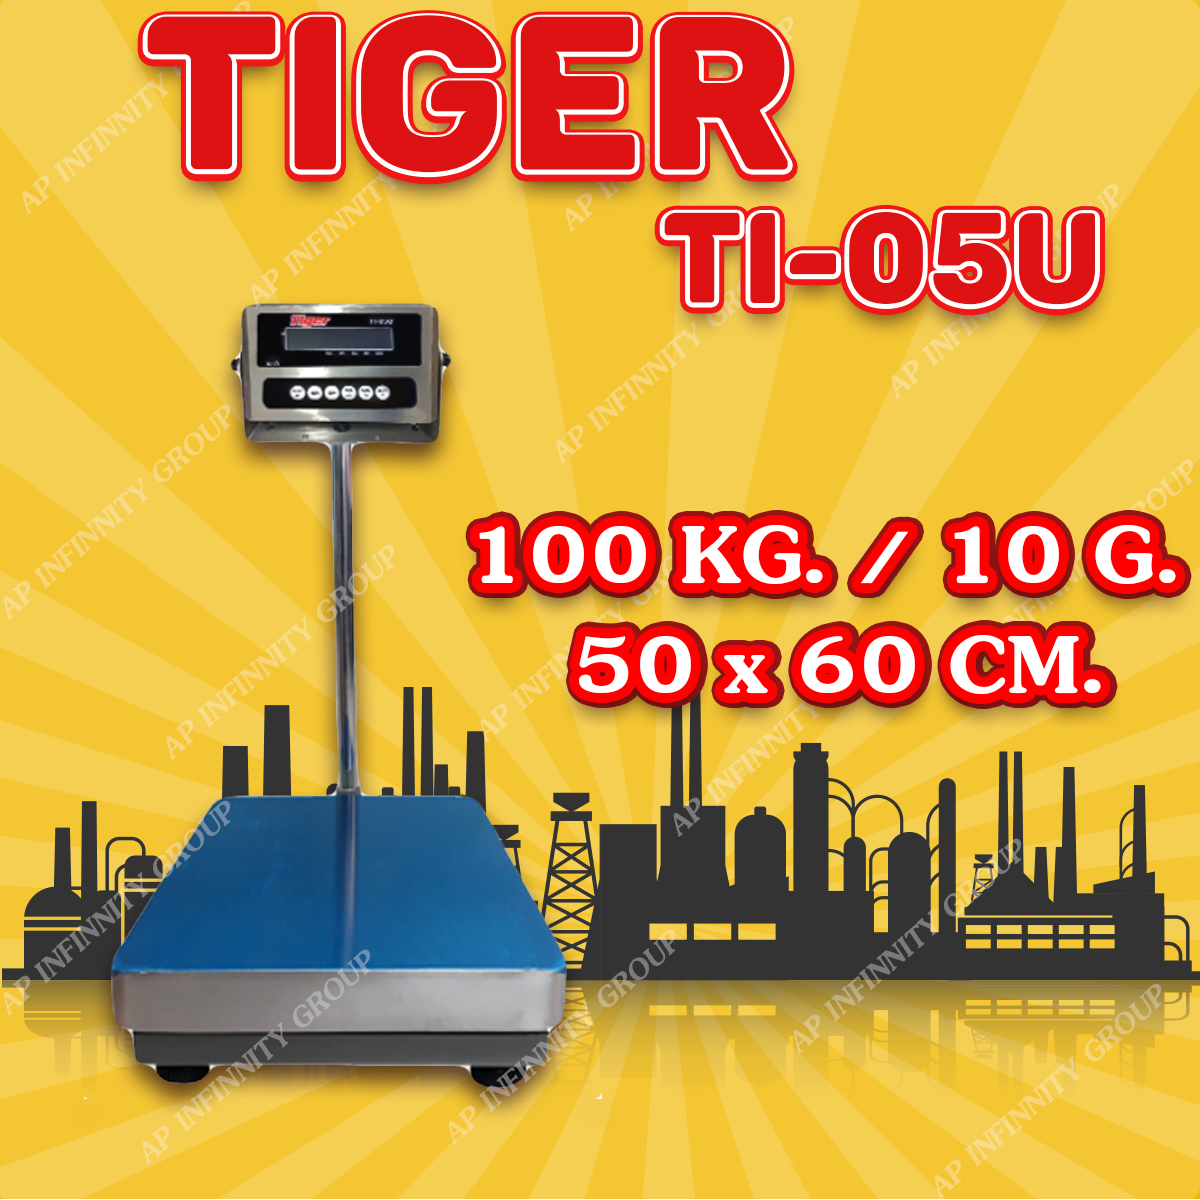 ตาชั่งดิจิตอล เครื่องชั่งดิจิตอล เครื่องชั่งตั้งพื้น 100kg ความละเอียด 10g ยี่ห้อ Tiger รุ่น TI–05U แท่นชั่งขนาดฐาน 50x 60cm มีช่อง USB สำหรับการบันทึกข้อมูลได้ รูปที่ 1